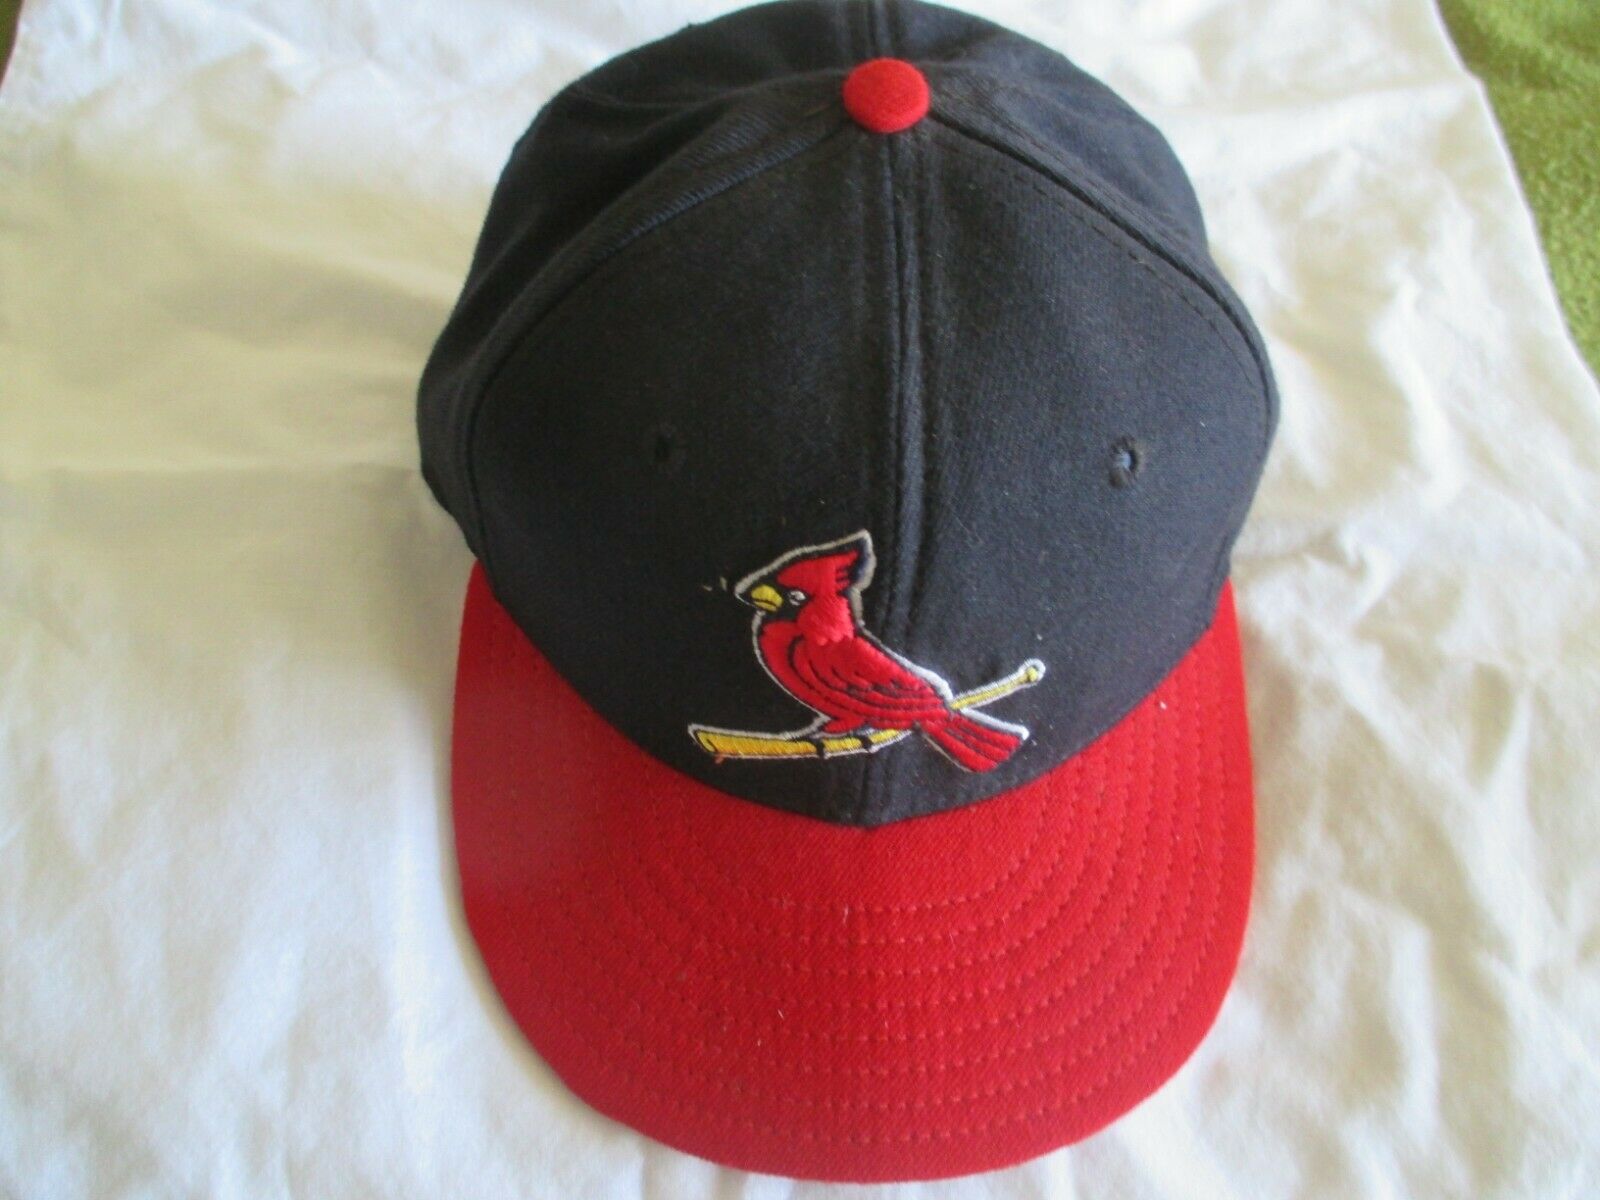 st louis cardinals hat vintage